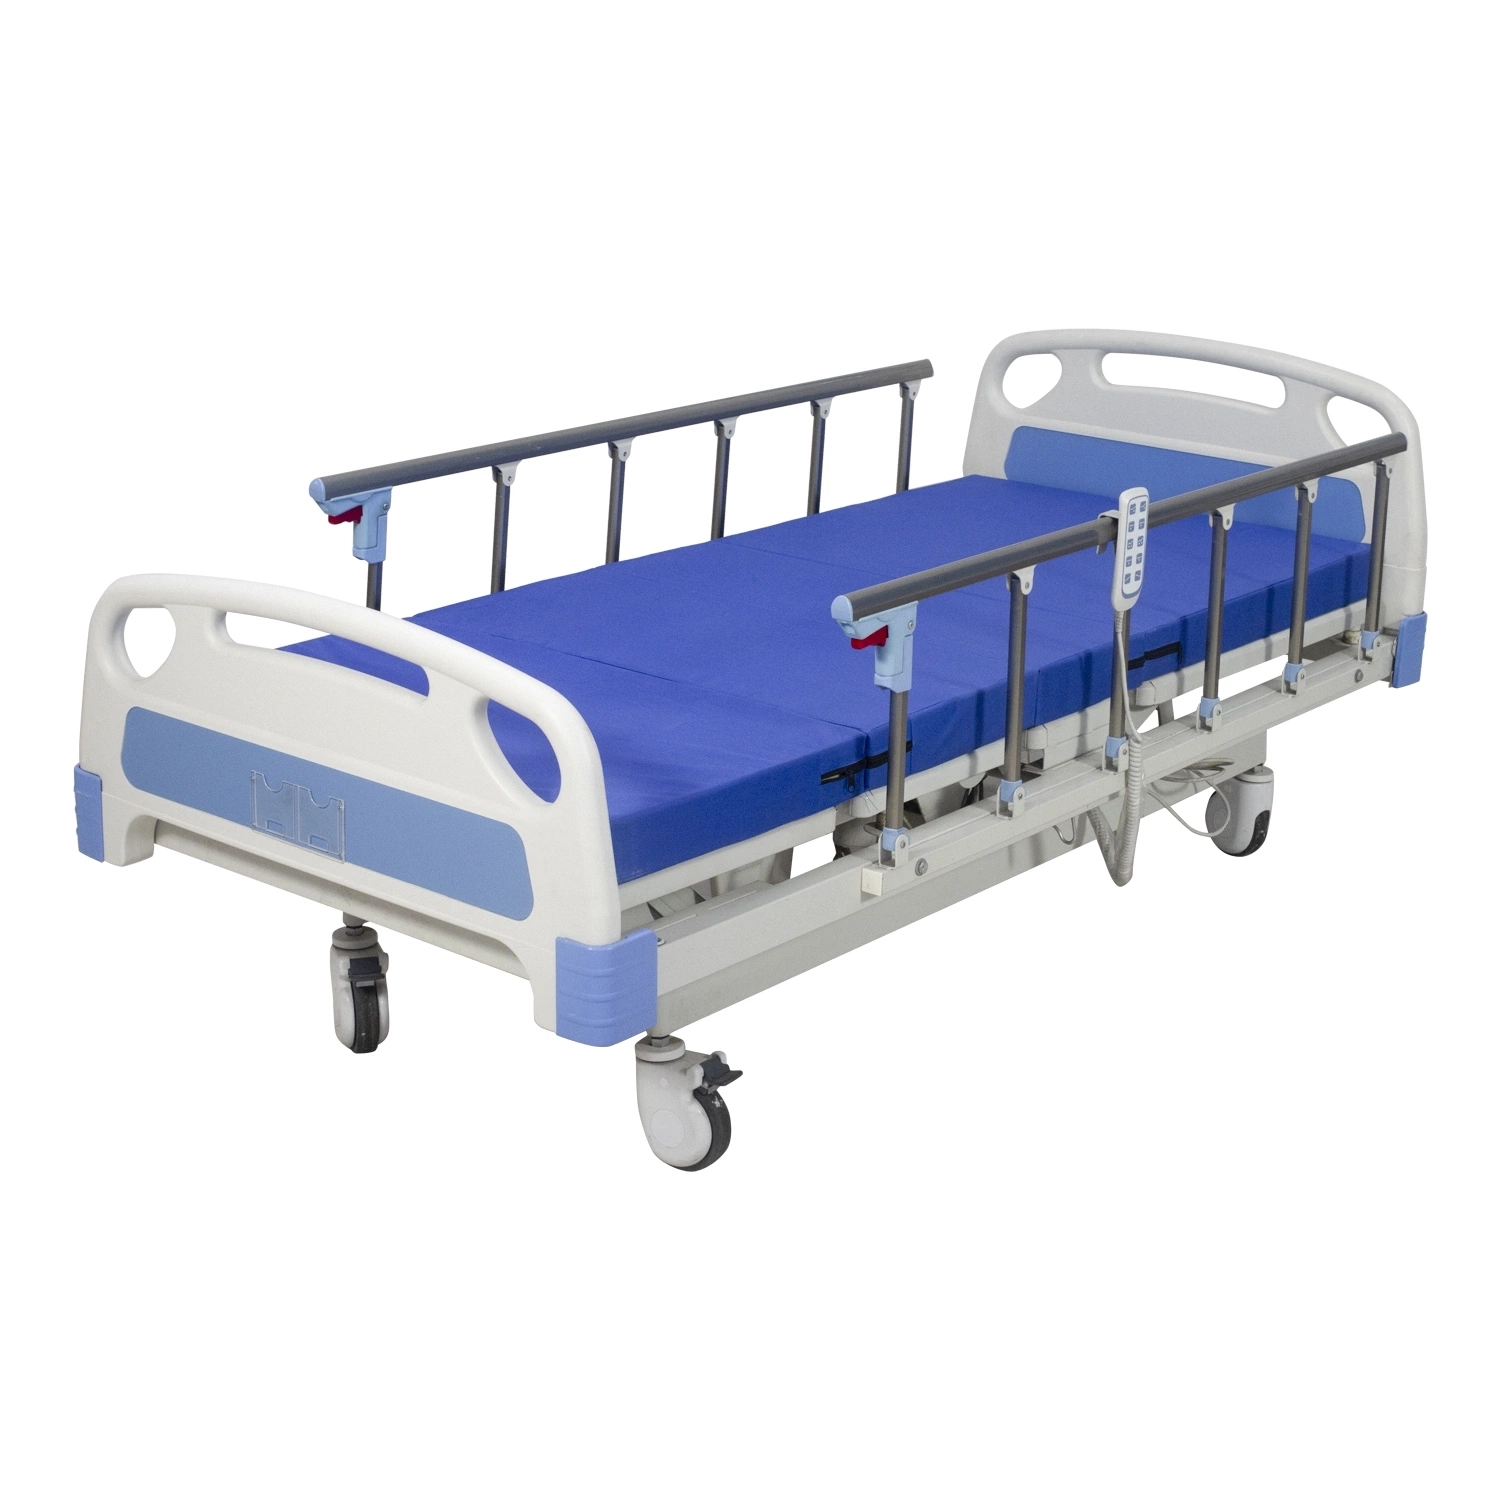 5-Función Rh-Ad428 Hospital motorizado cama de acero eléctrico ajustable de postura de la cama de cuidados con barandas de aluminio